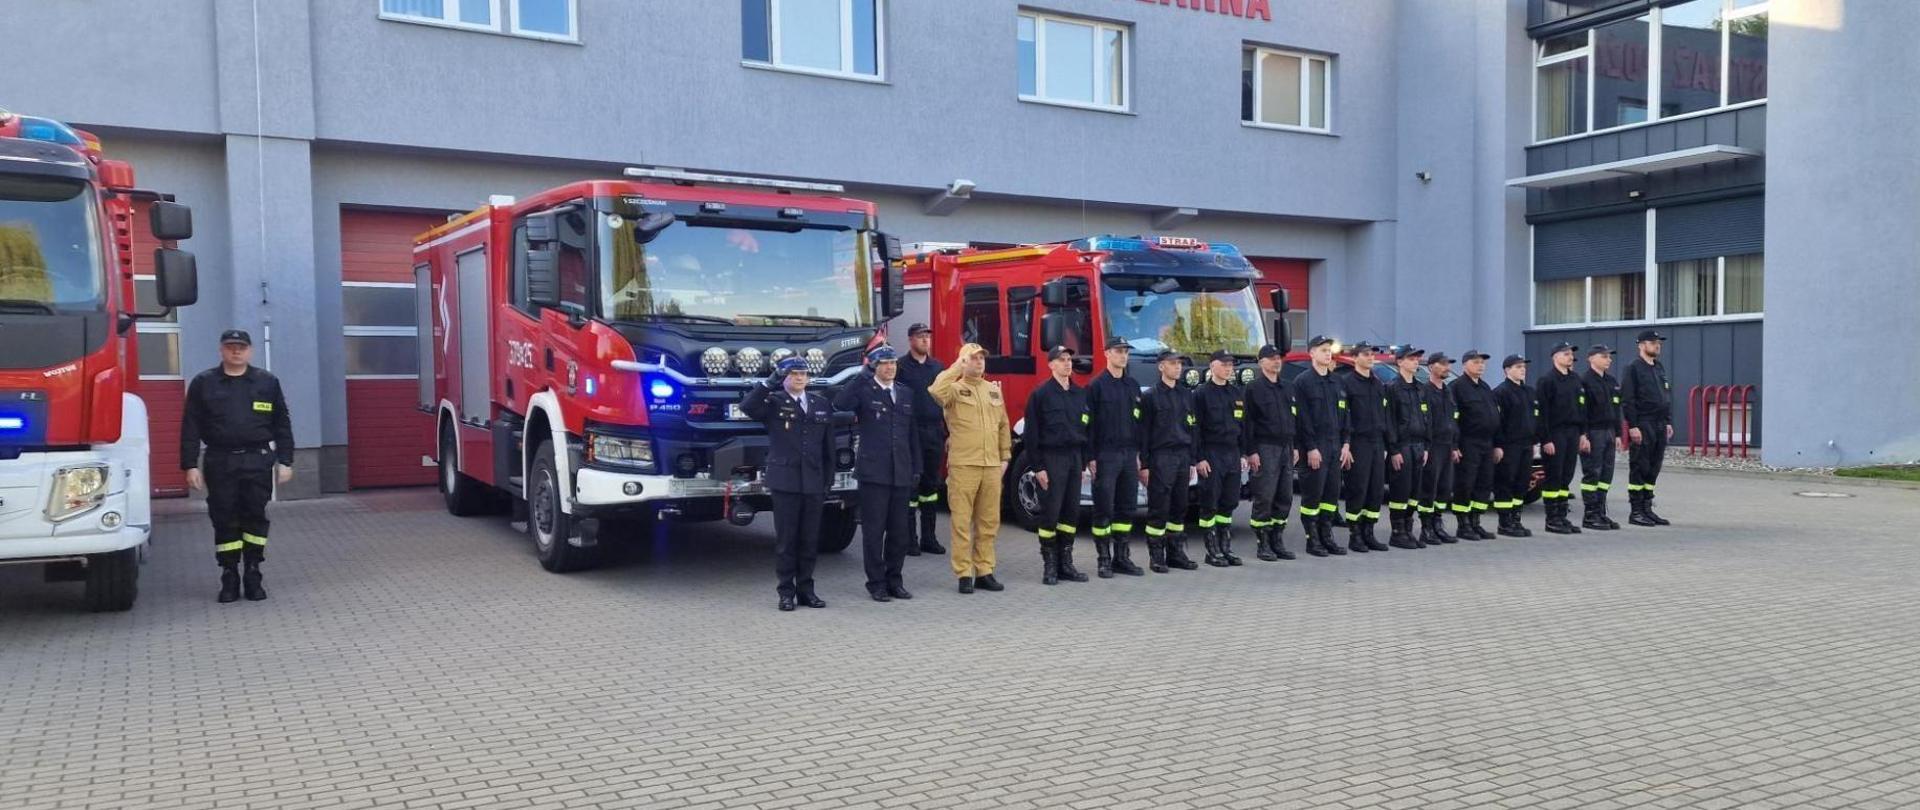 Konińscy strażacy, druhowie z OSP Konin-Chorzeń na czele z Wielkopolskim Komendantem Wojewódzkim PSP oddali hołd zmarłemu druhowie. Za nimi stoją samochody strażackie na sygnałach, 